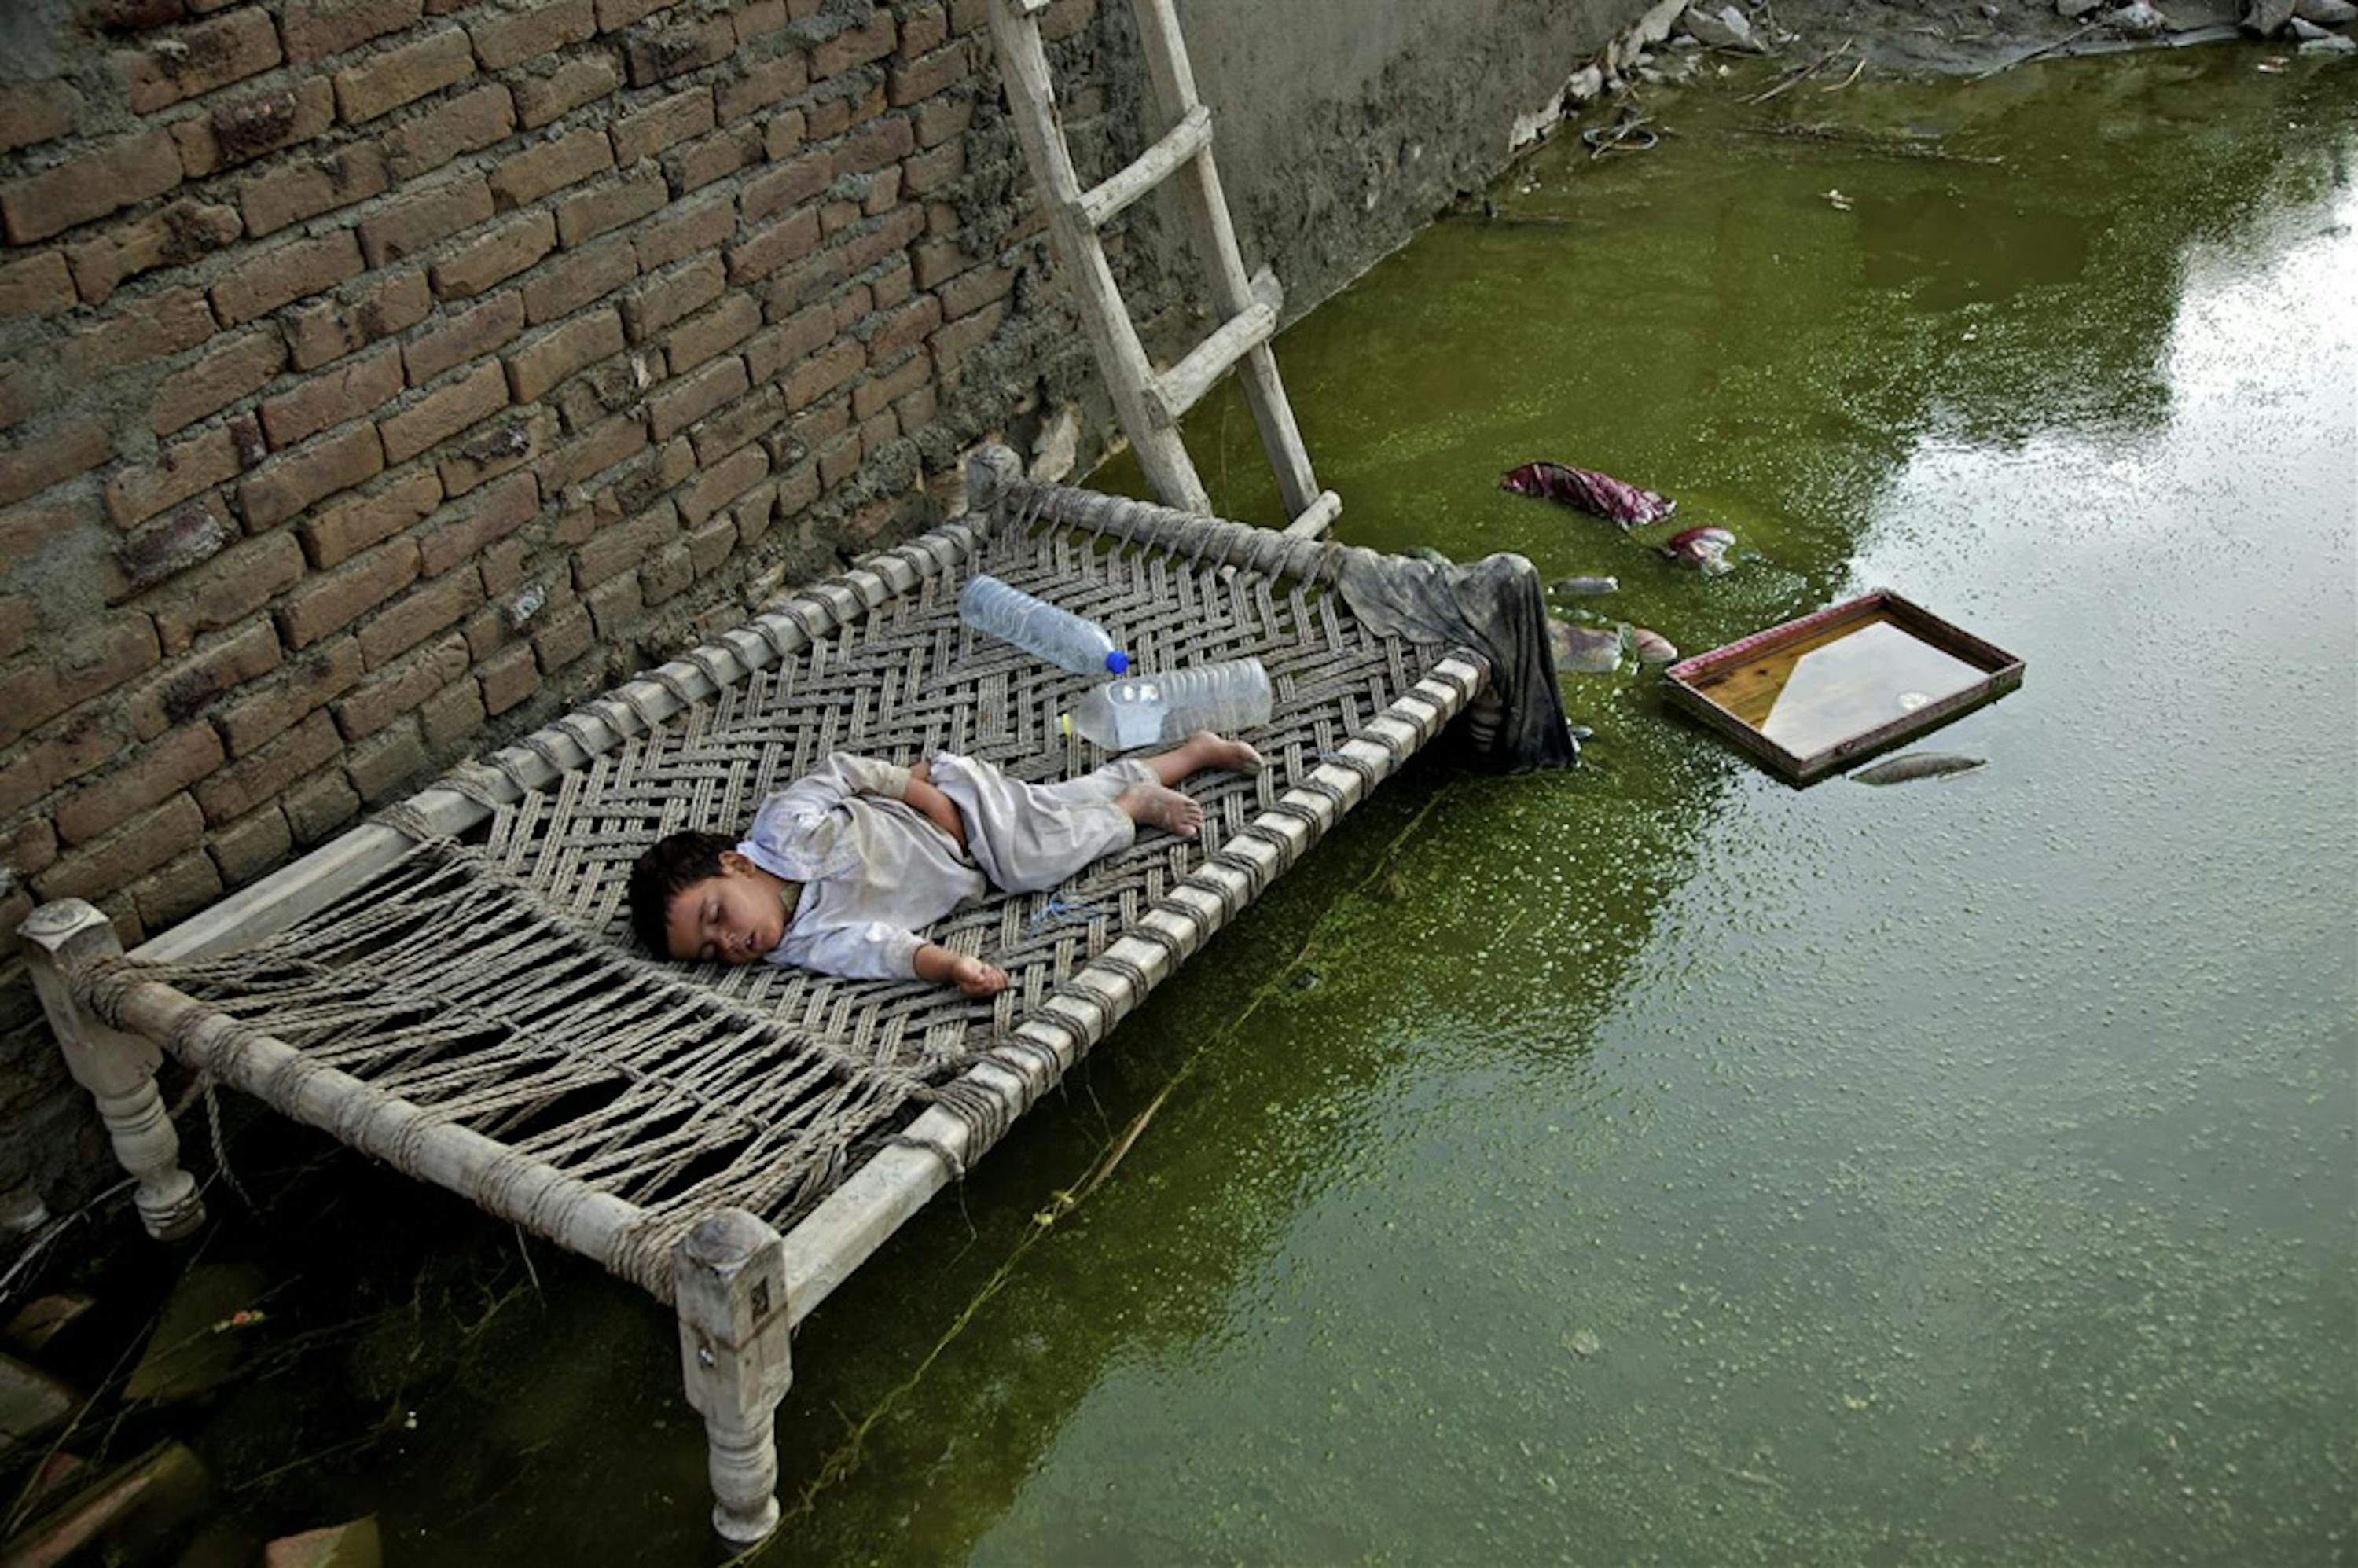 Un letto improvvisato fra le acque limacciose che hanno allagato il villaggio di Khwas Koorona, nella provincia di Kybher, una delle più devastate dalle inondazioni - ©UNICEF/NYHQ2010-1569/Zaid